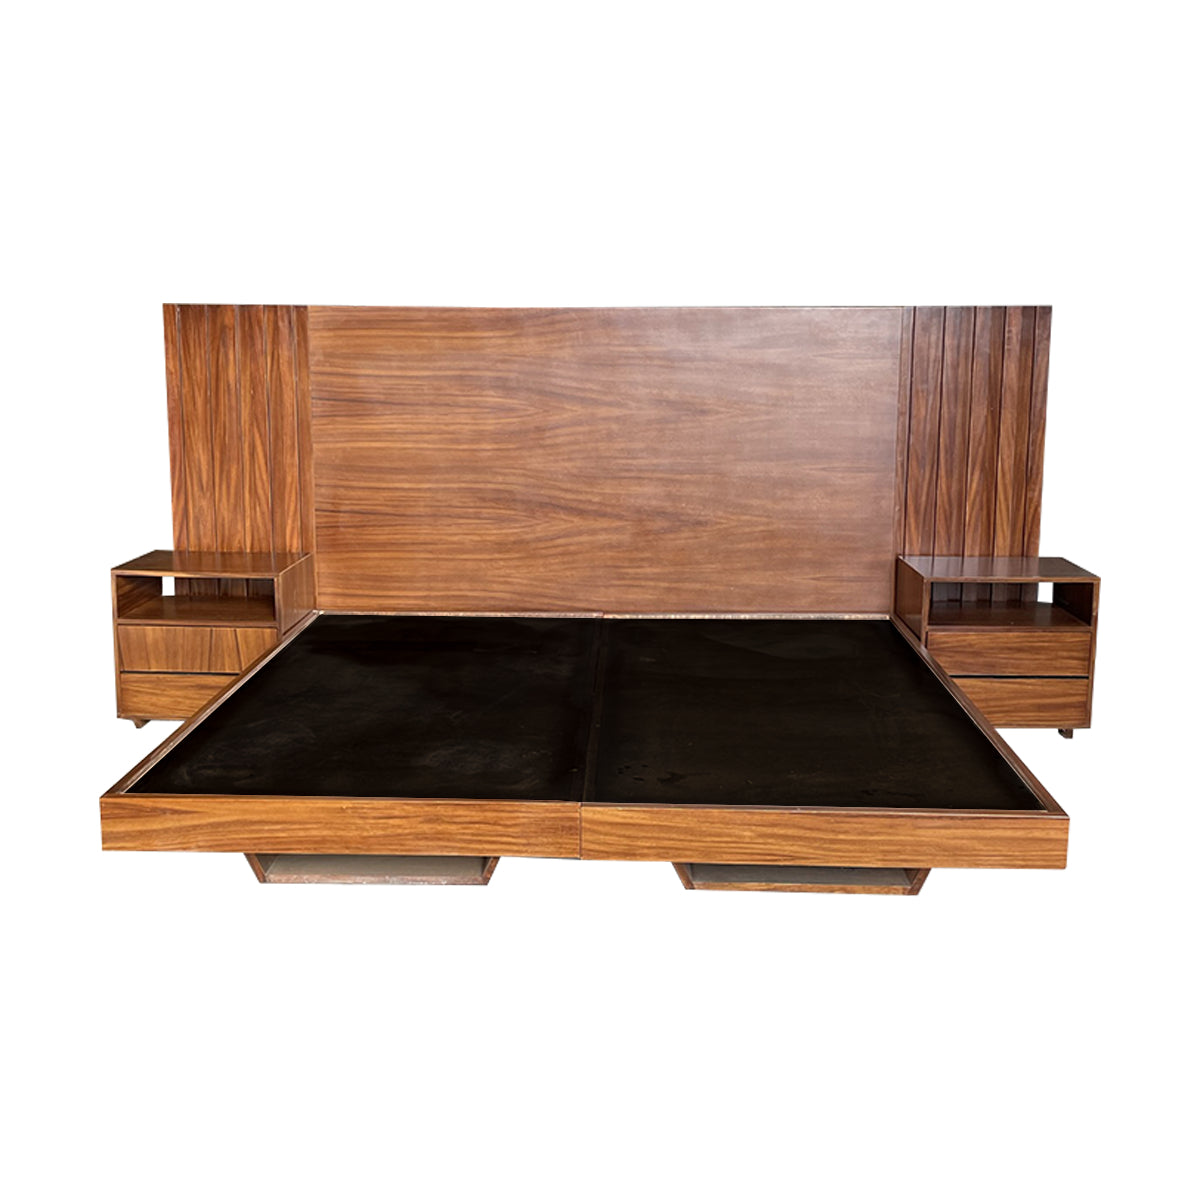 Bases de cama - Diseño de muebles de madera – Wooden Box Mx